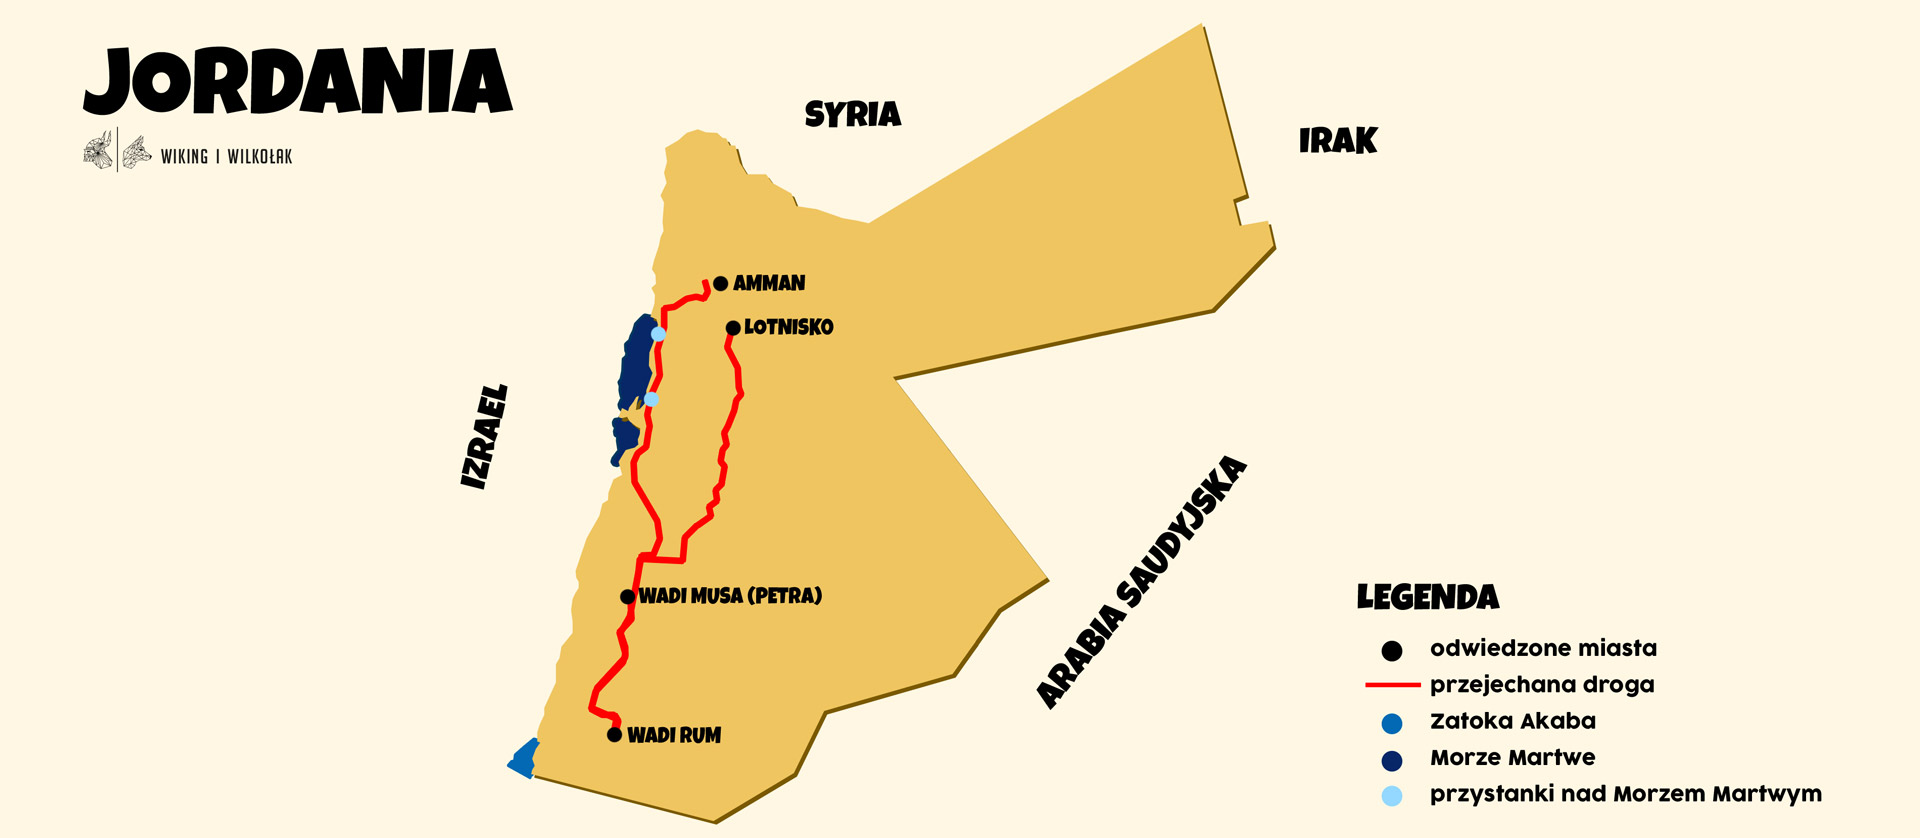 jordania mapa podrozy 2020